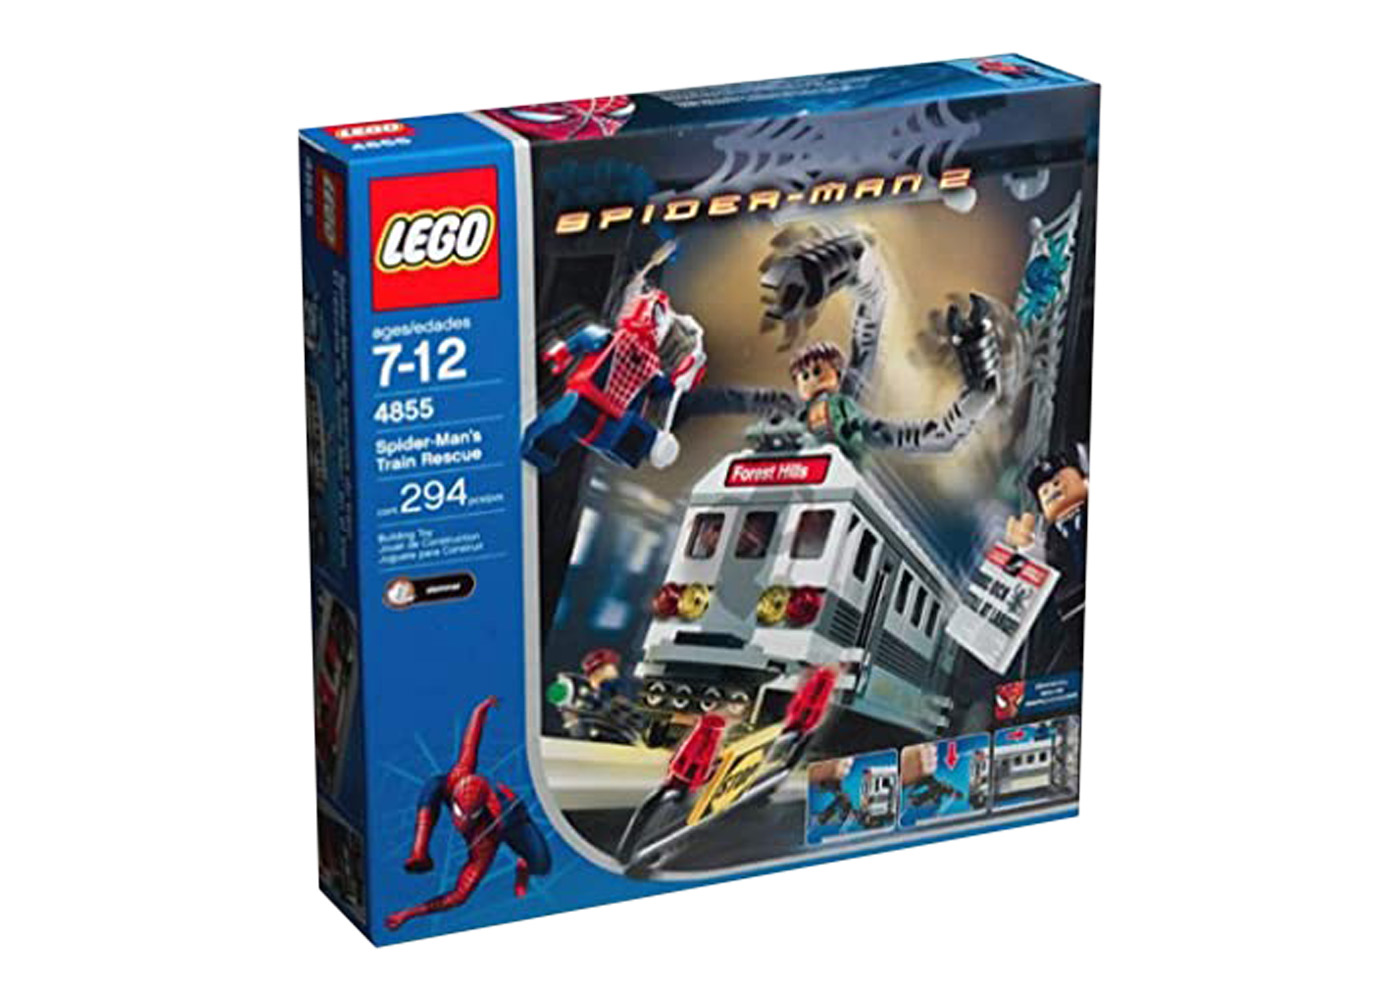 LEGO Spider-Man Spider-Man's Train Rescue Set 4855